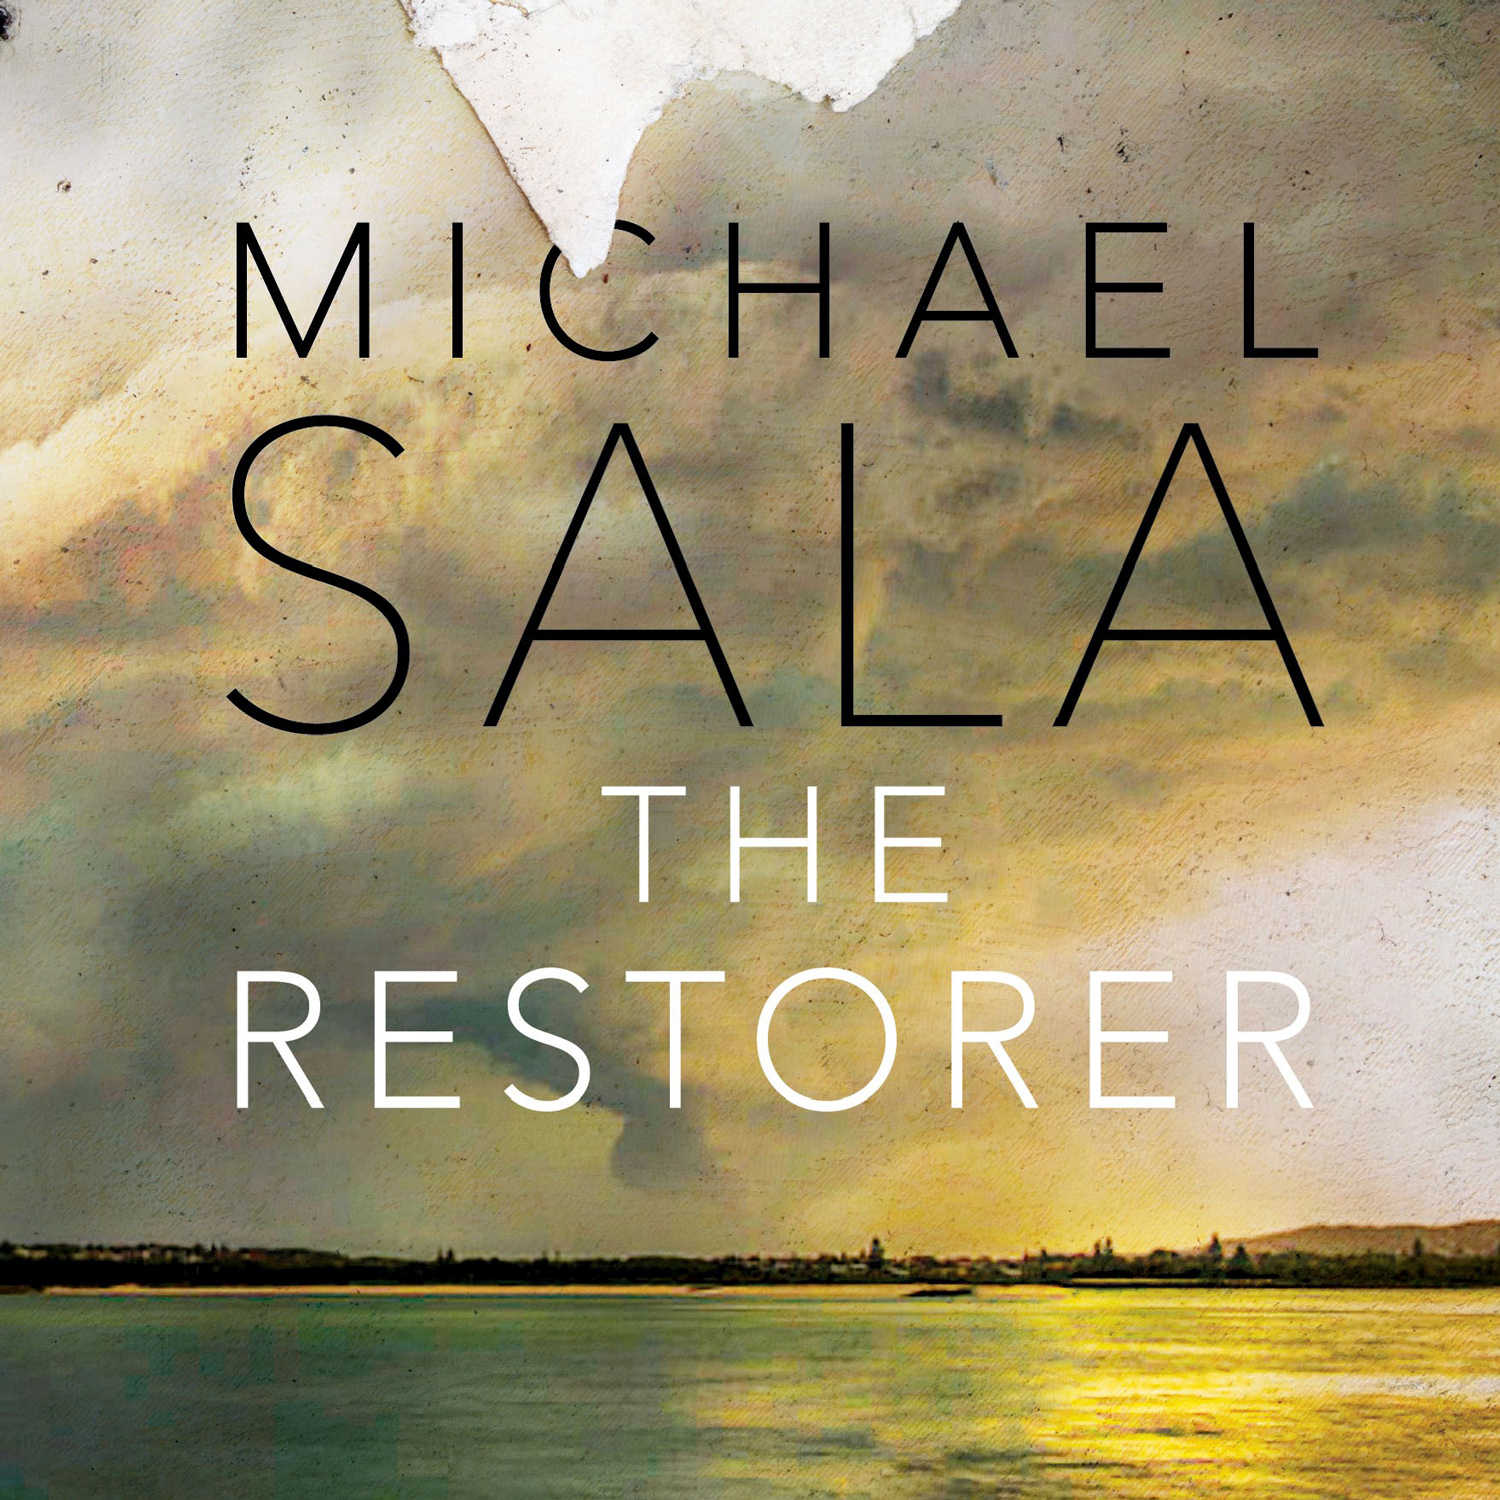 The Restorer: a novel by Michael Sala^empty:{ds__assetid^as_asset:asset_name}